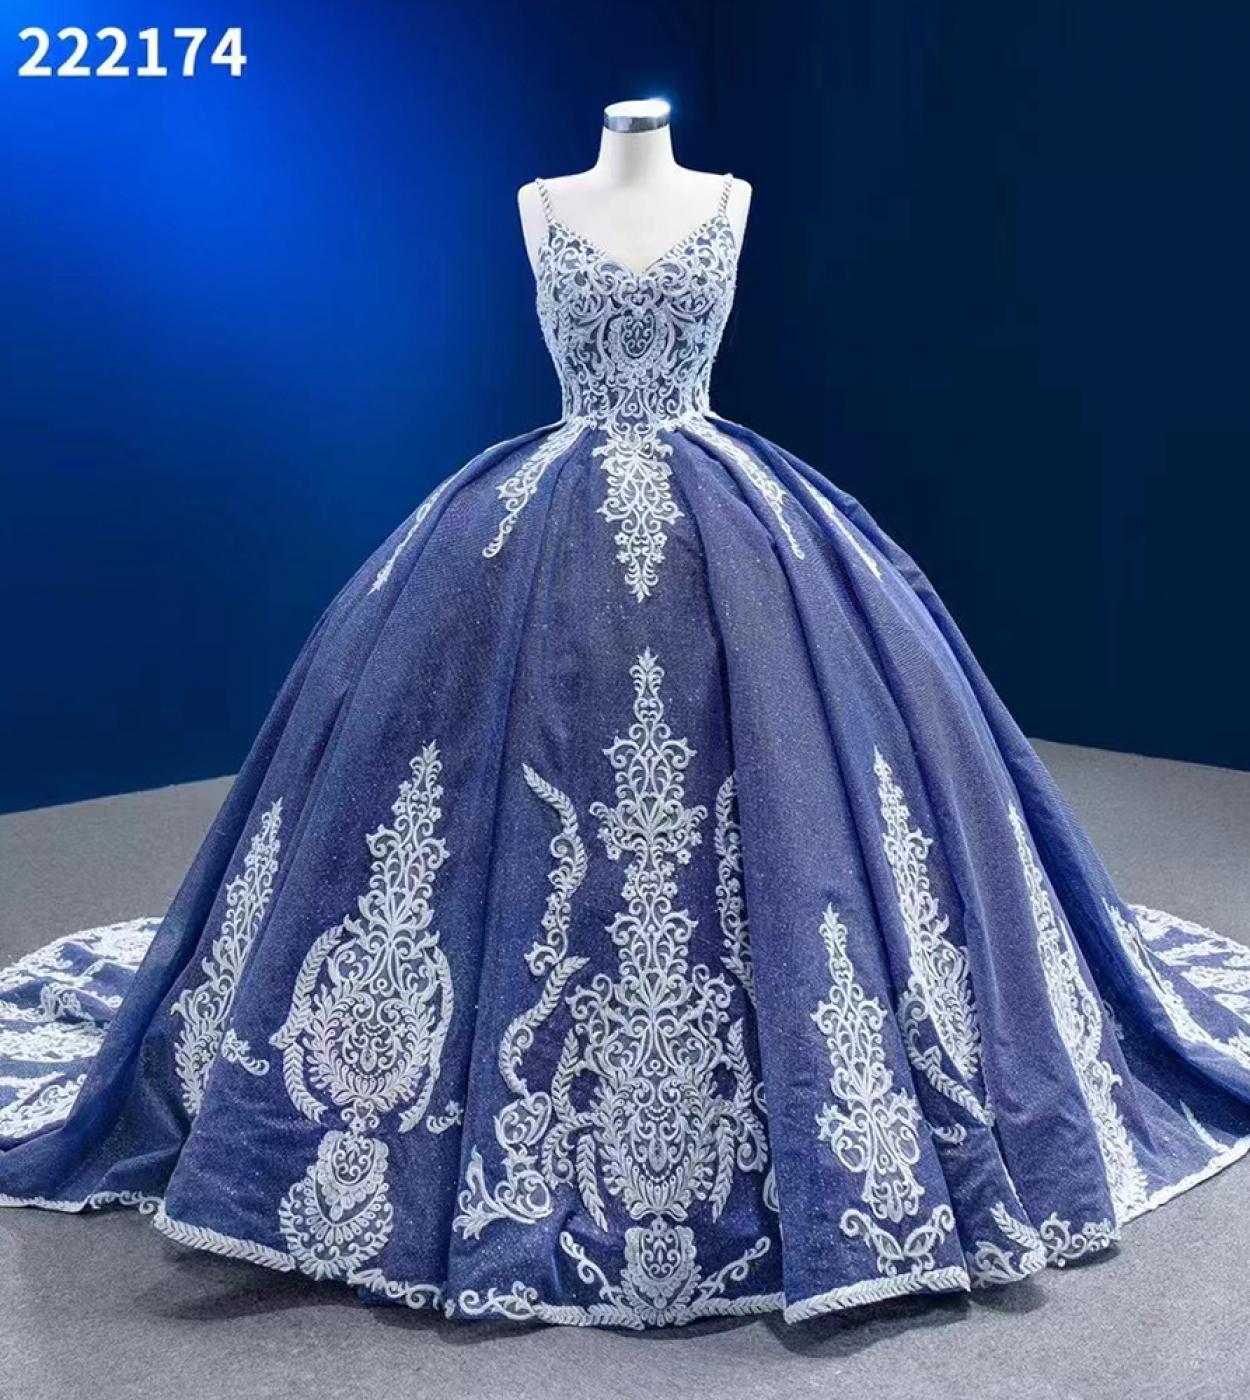 שמלת כלה שלווה היל כחולה שלווה היל שמלות חרוזים שלווה היל שמלות כלה שמלות כלה